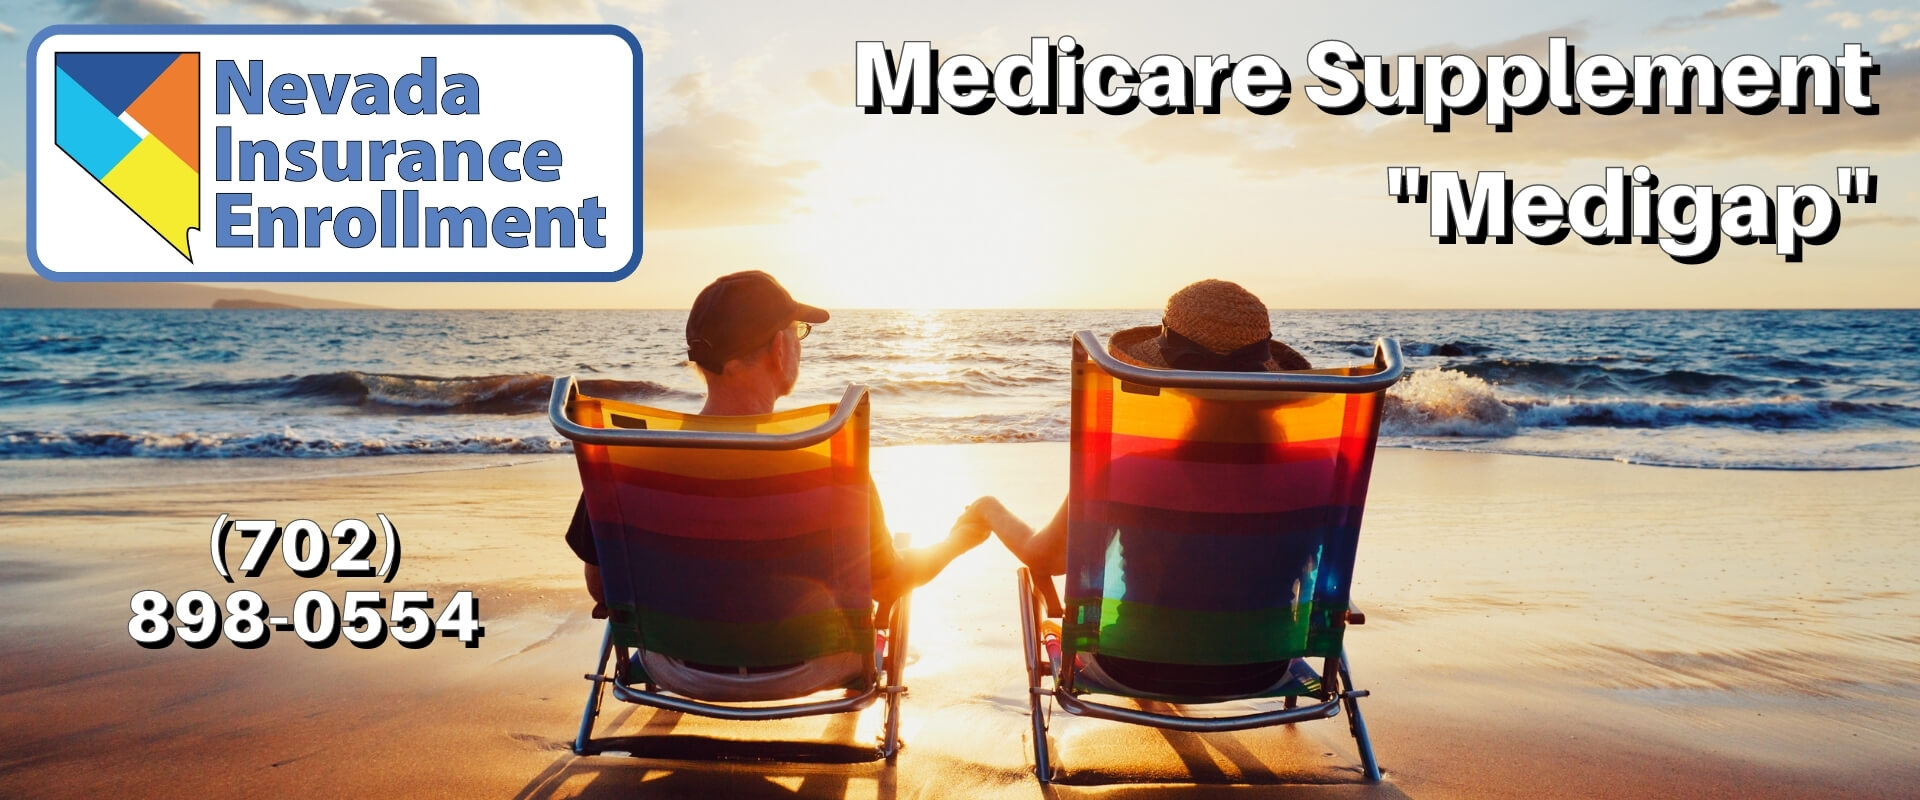 Medicare Supplement "Medigap" MAIN page image